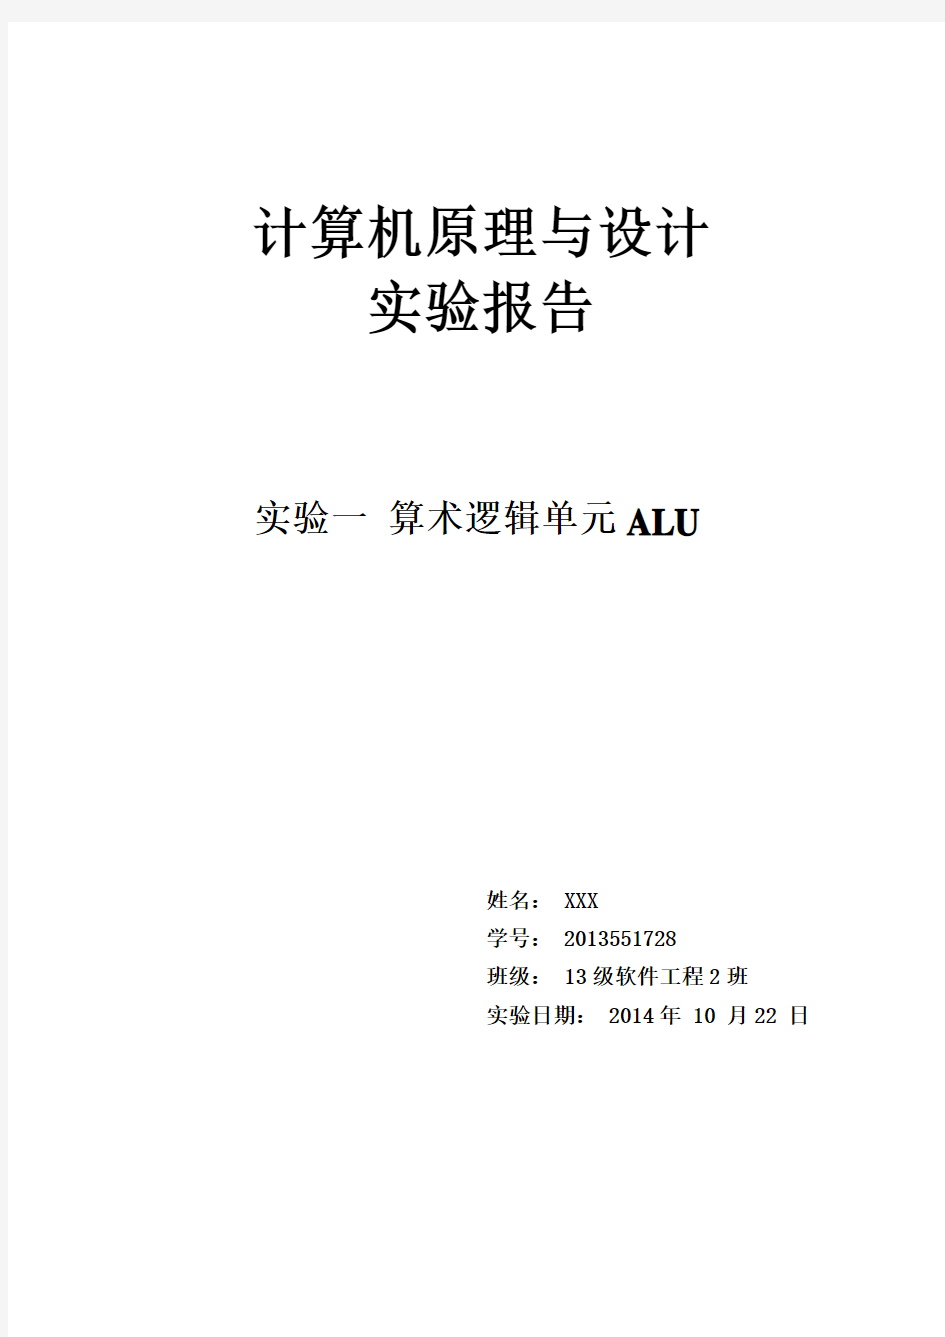 湘潭大学计算机原理实验一算术逻辑单元ALU实验报告